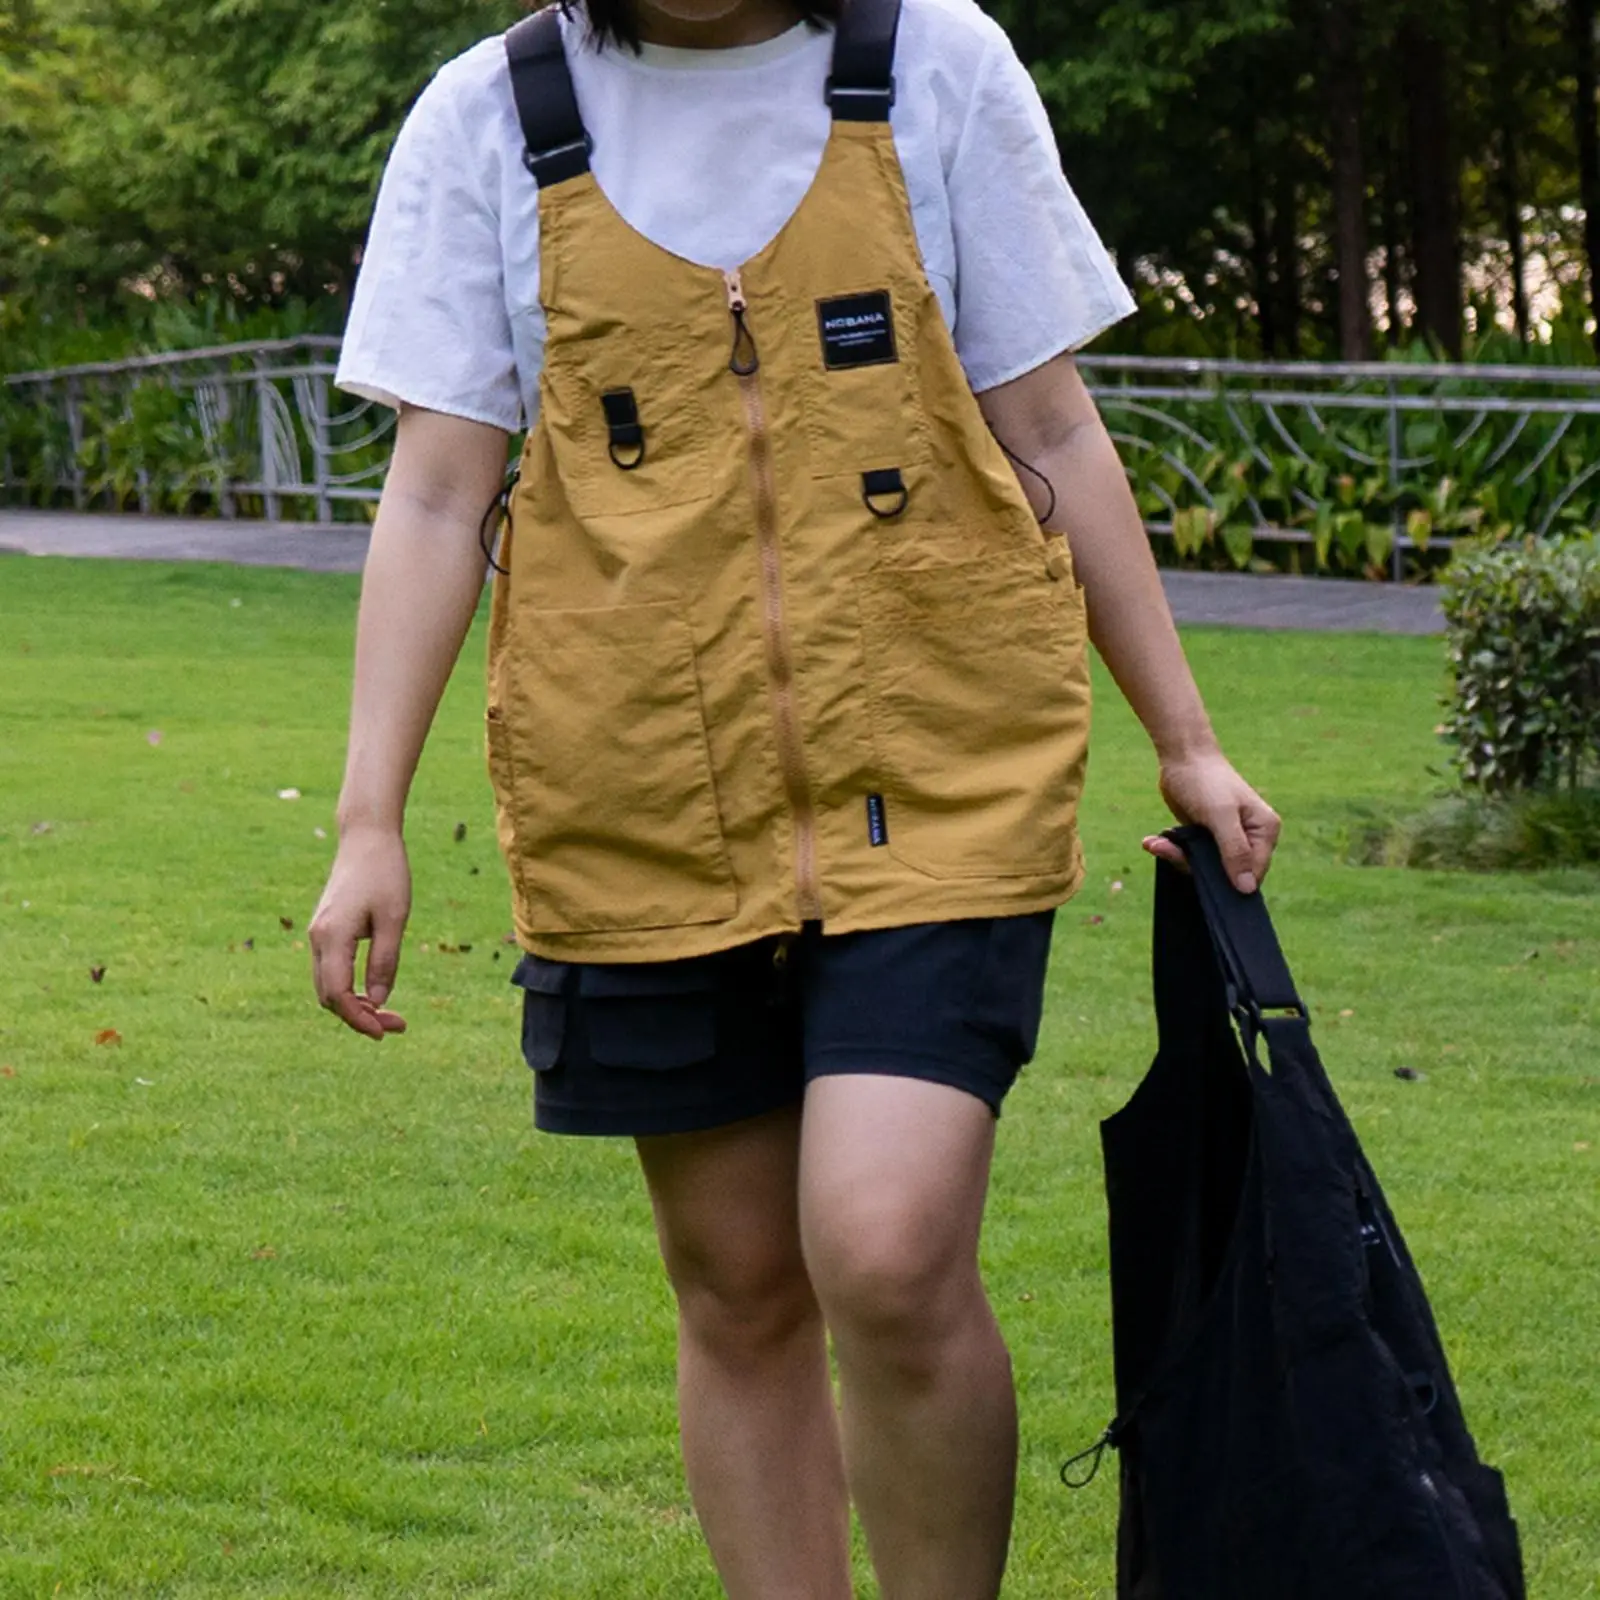 Outdoor Multi Functional Camping Vest Multi Pocket Handbag Waistcoat for Men